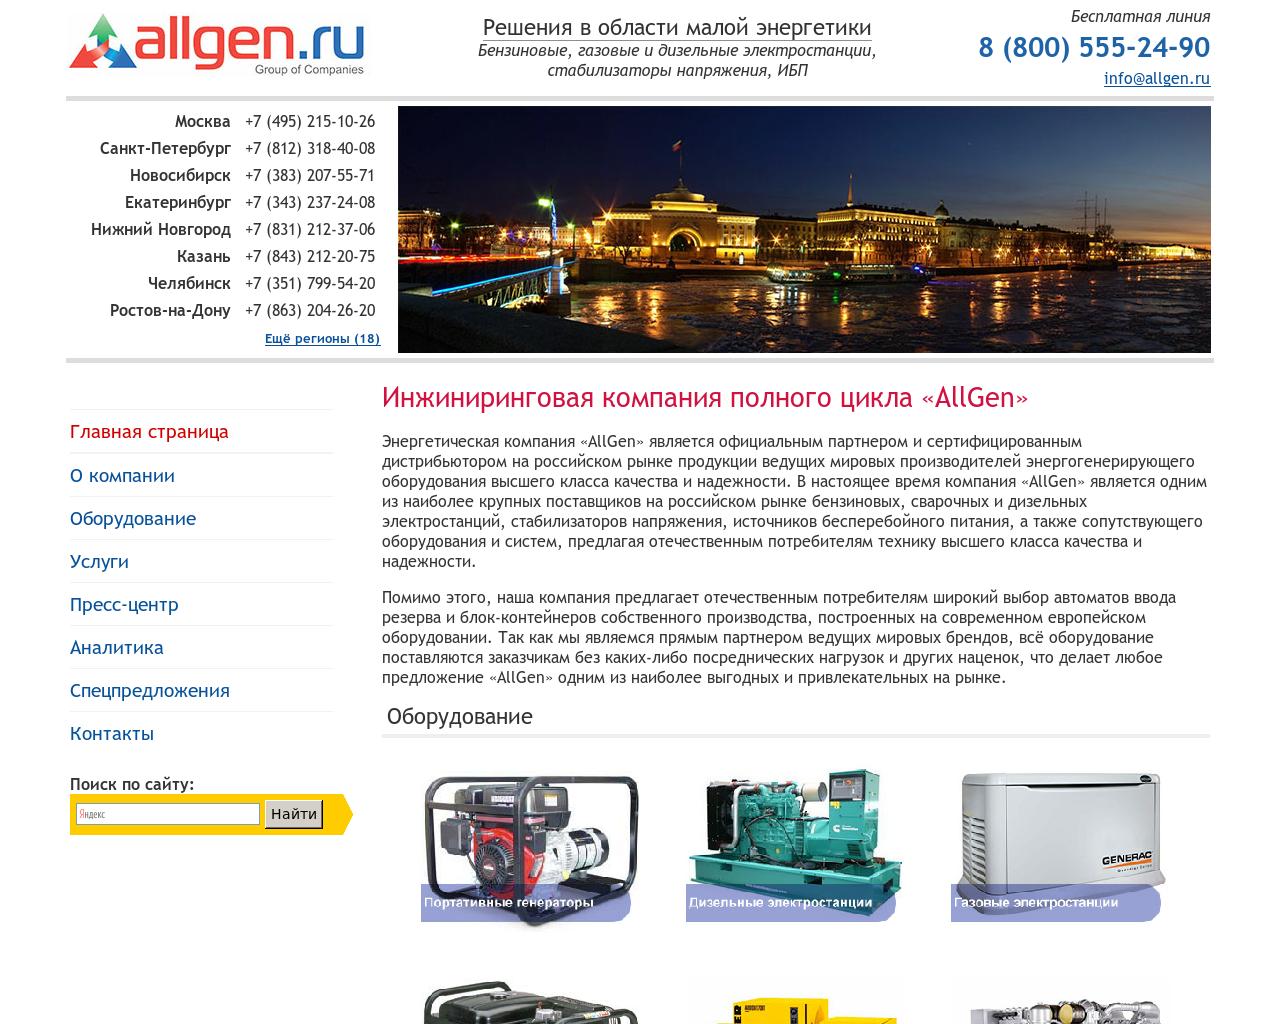 Изображение сайта allgen.ru в разрешении 1280x1024